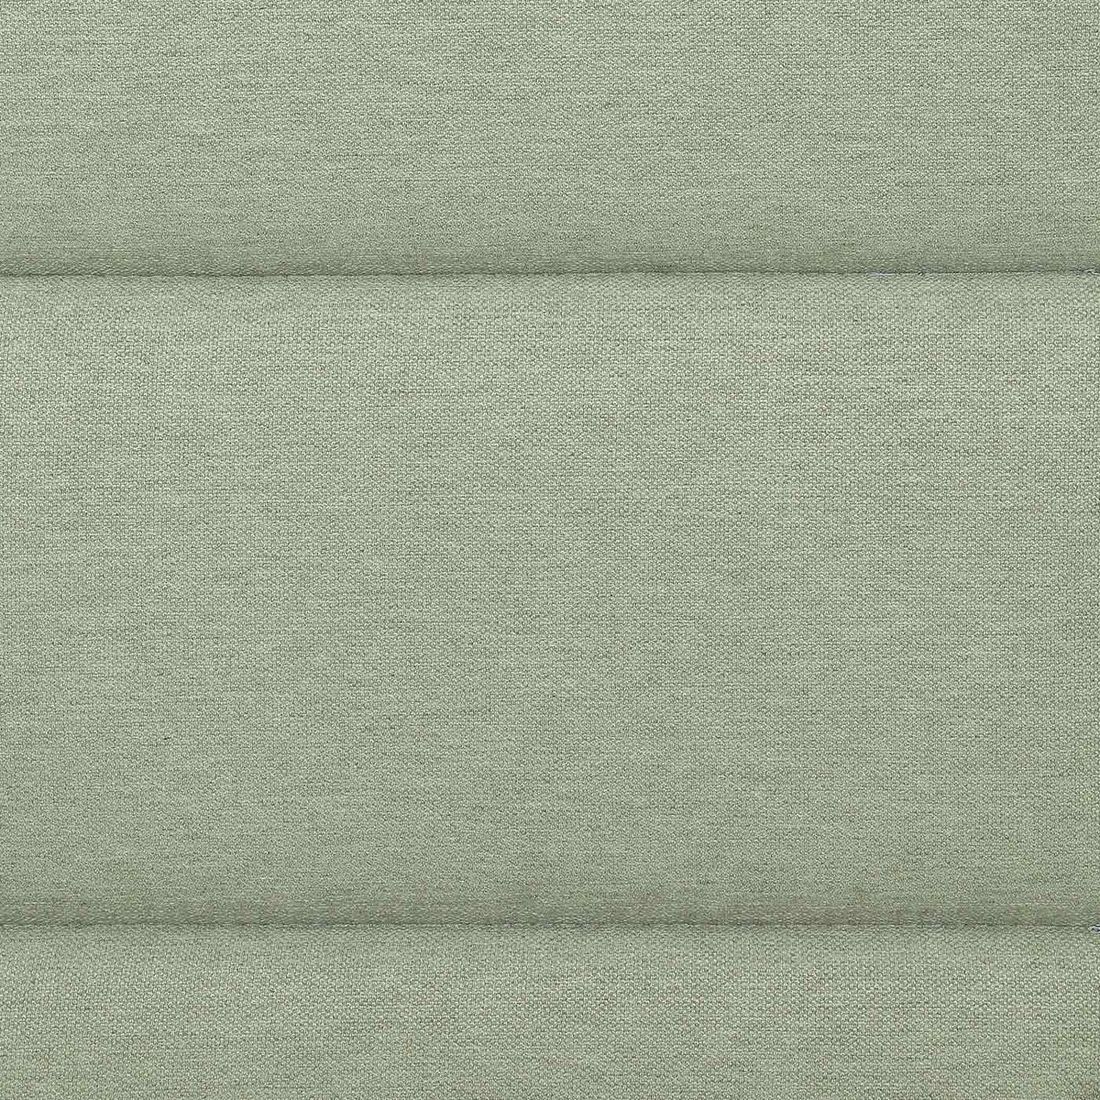 GO-DE Sesselauflage nieder 98x48cm Polyester